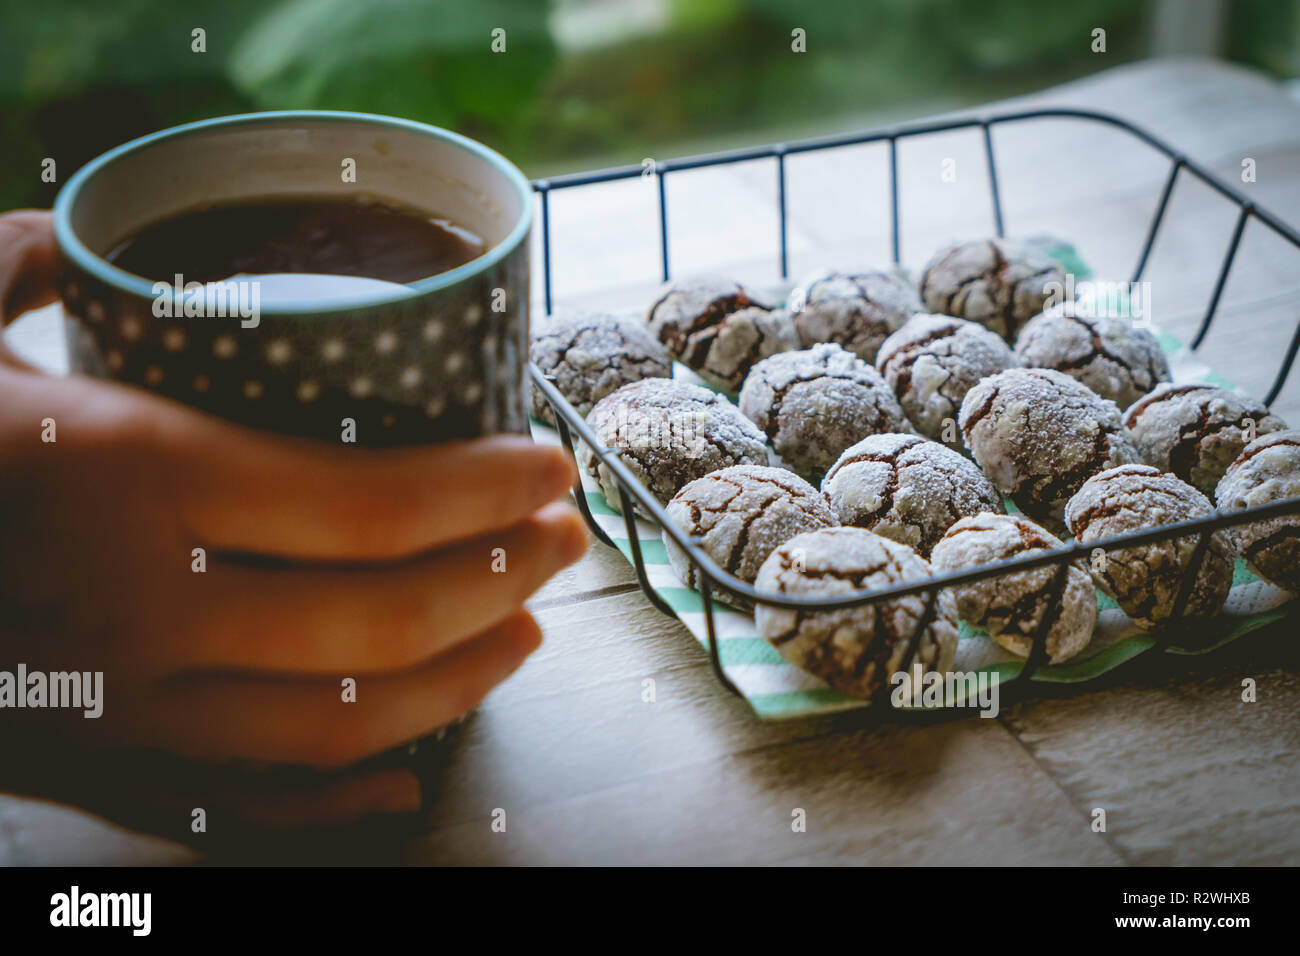 Schokolade crinkle Cookies in einem Korb mit einer Tasse Kaffee halten die Hände auf einen hölzernen Tisch. Nähe zu sehen. Querformat. Stockfoto